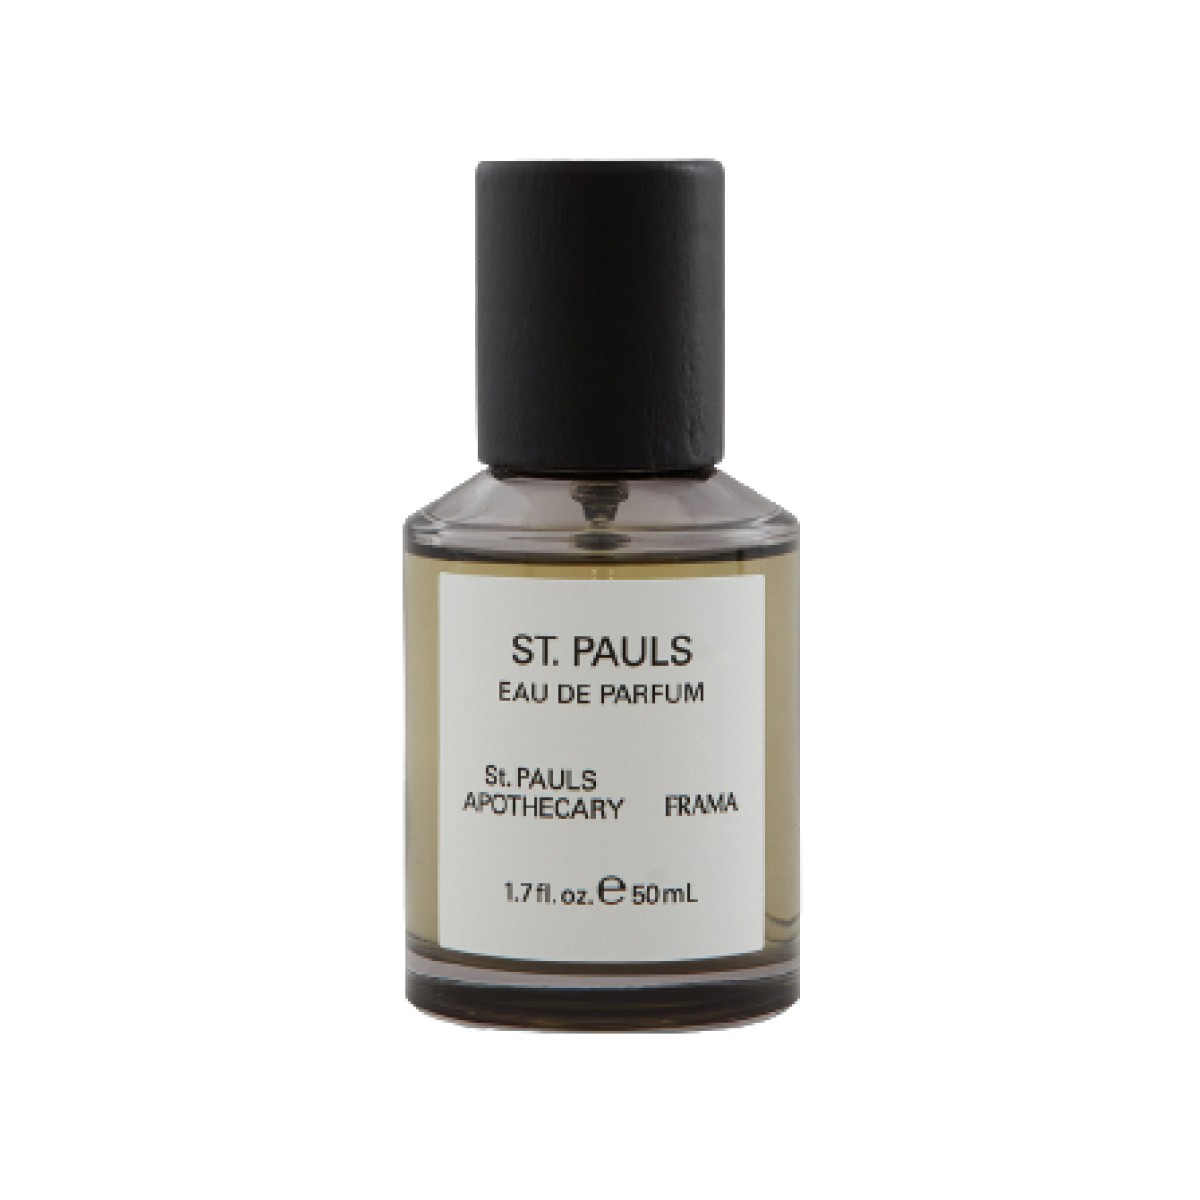 St. Pauls Eau de Parfum 50 ml